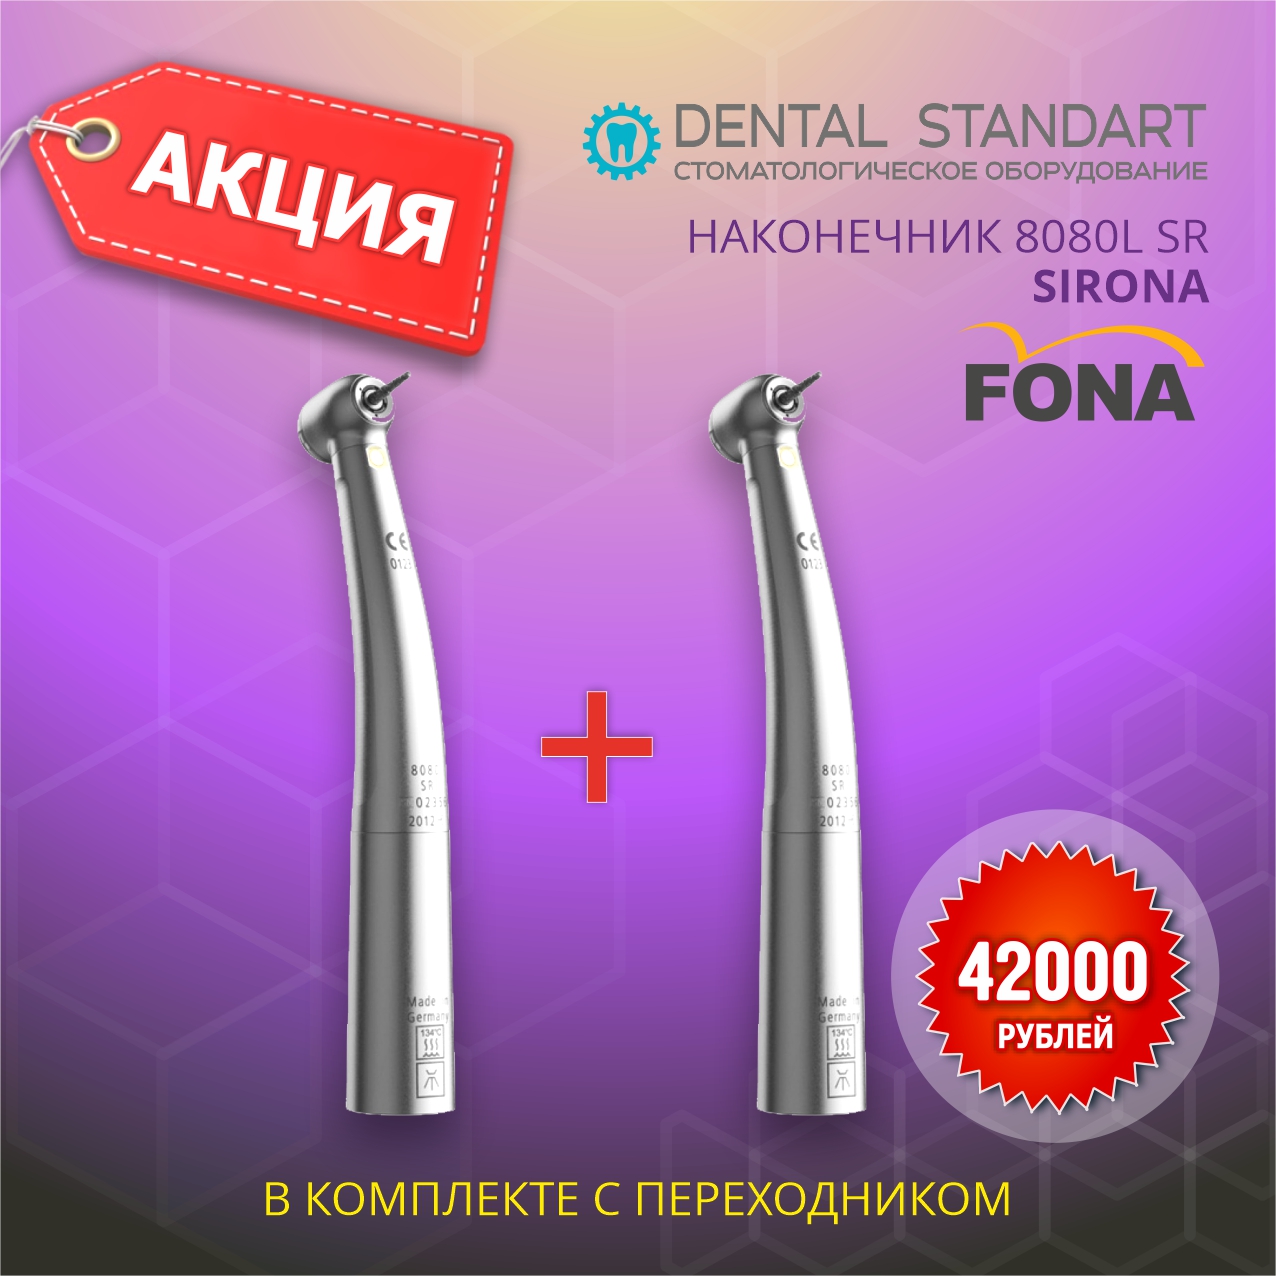 ❗️АКЦИЯ ❗️Турбинный наконечник FONA 8080L SR по выгодной цене в магазине медицинского оборудования в Краснодаре❗️